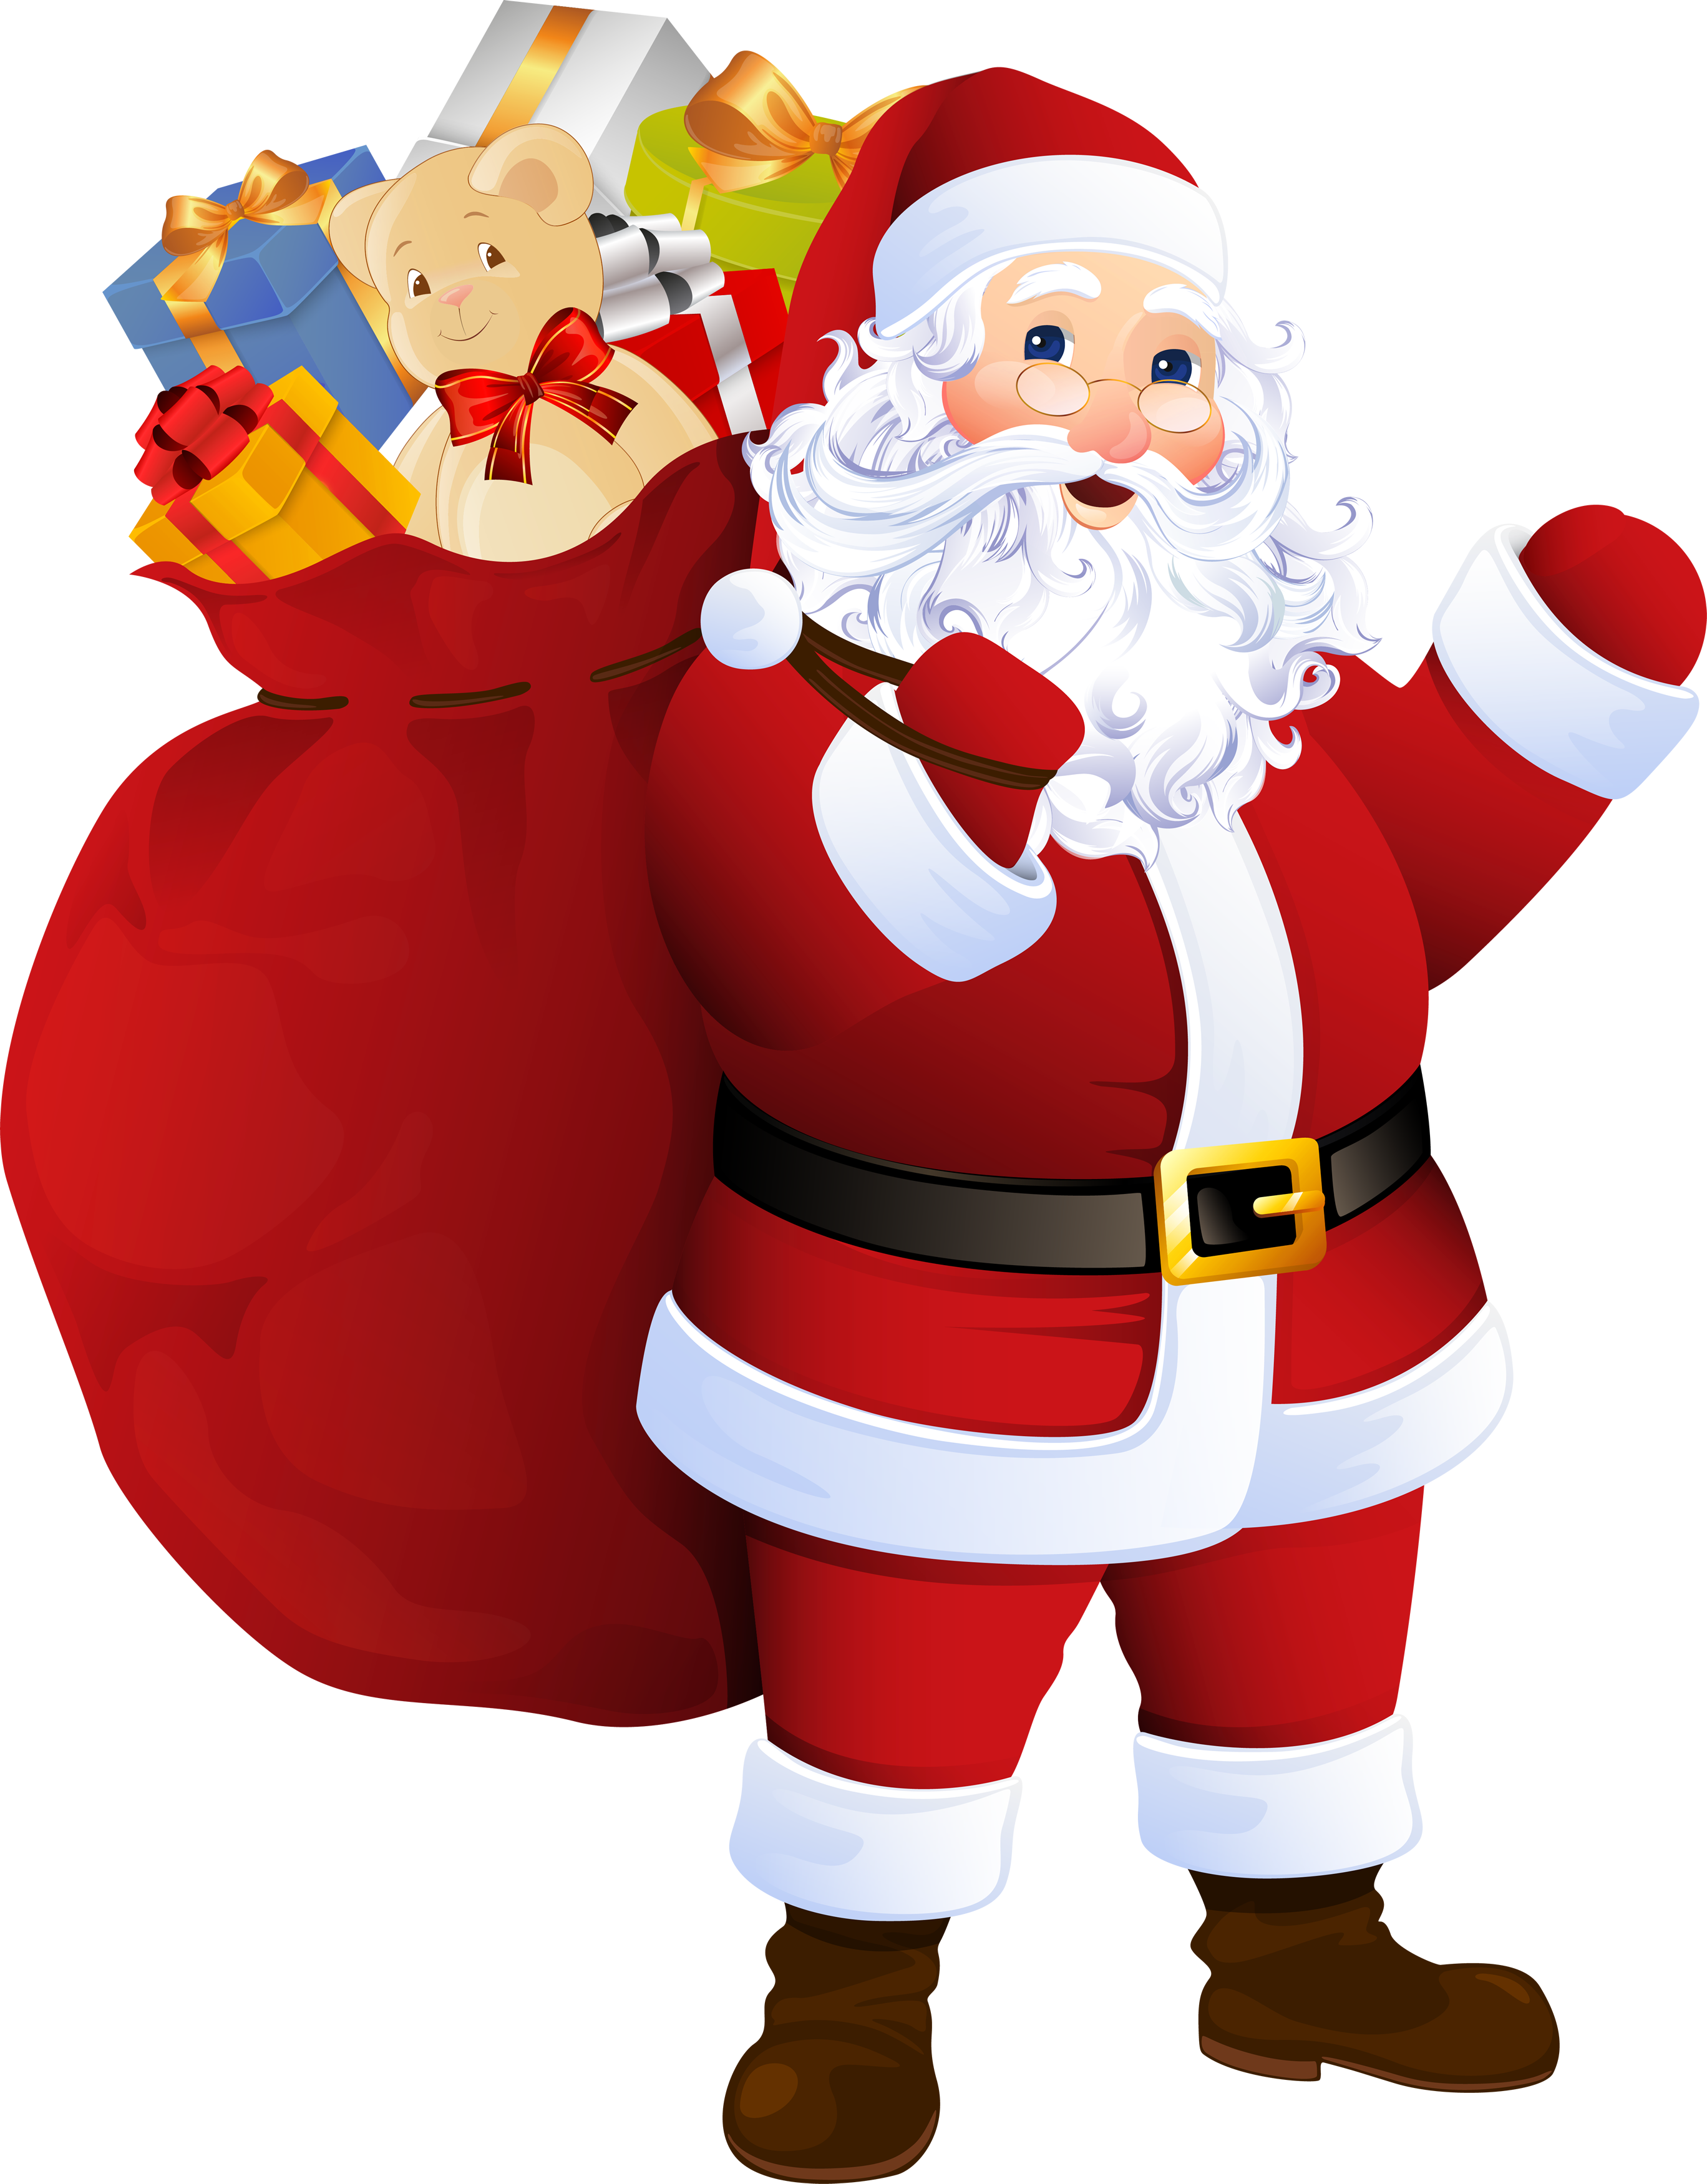 Download Santa Claus PNG imag